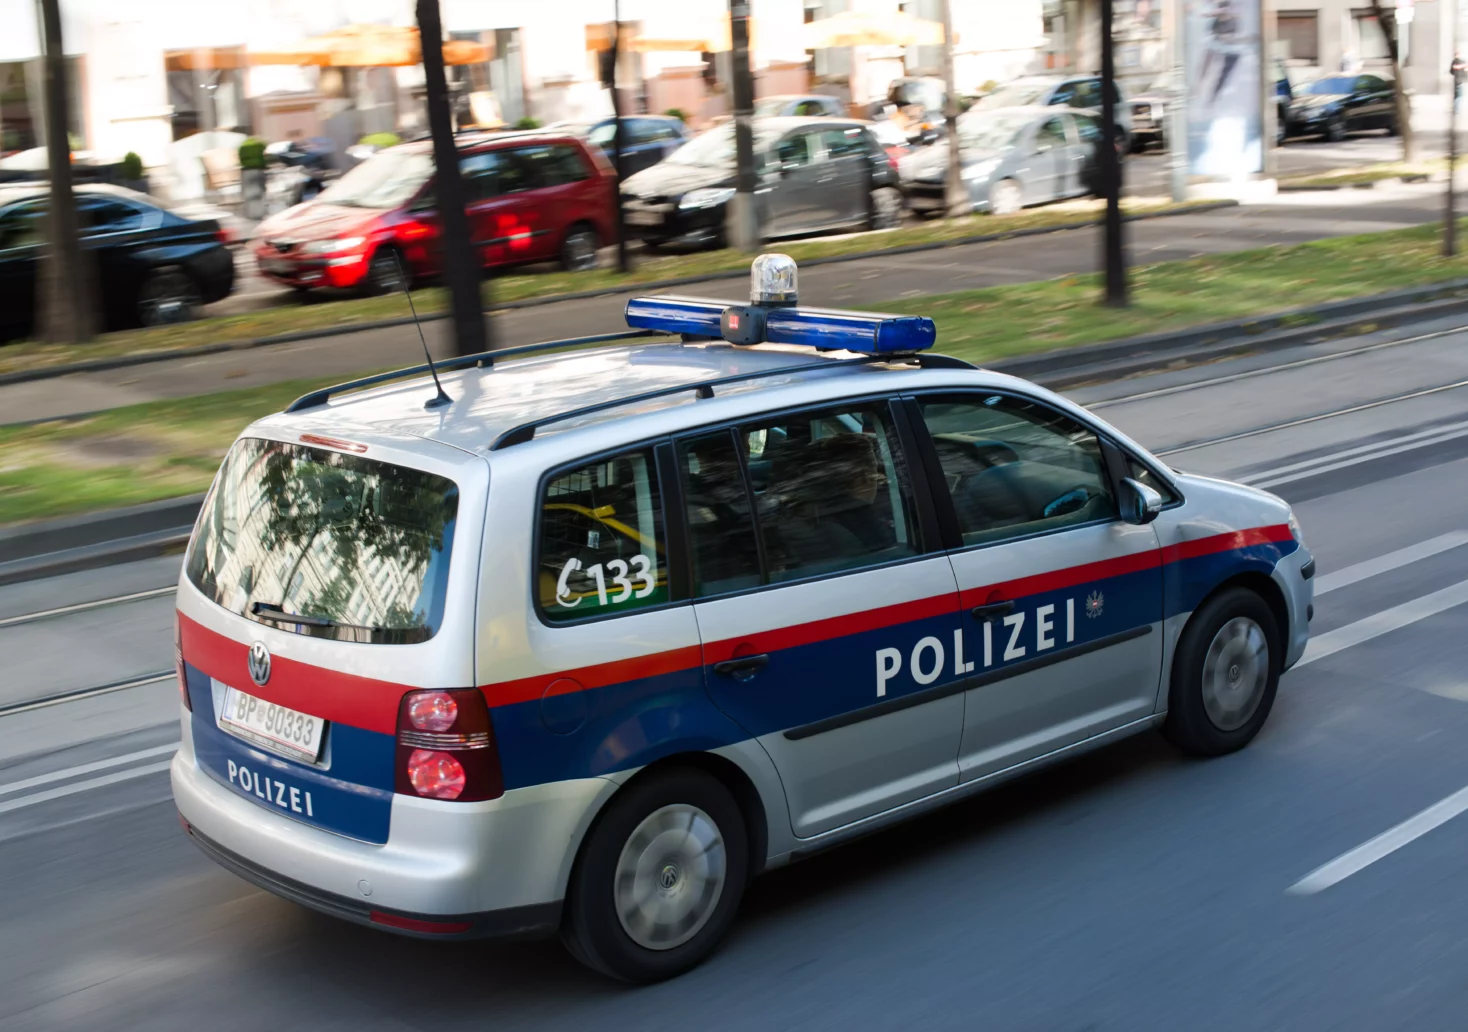 Bild auf 5min.at zeigt ein fahrendes Polizeiauto.